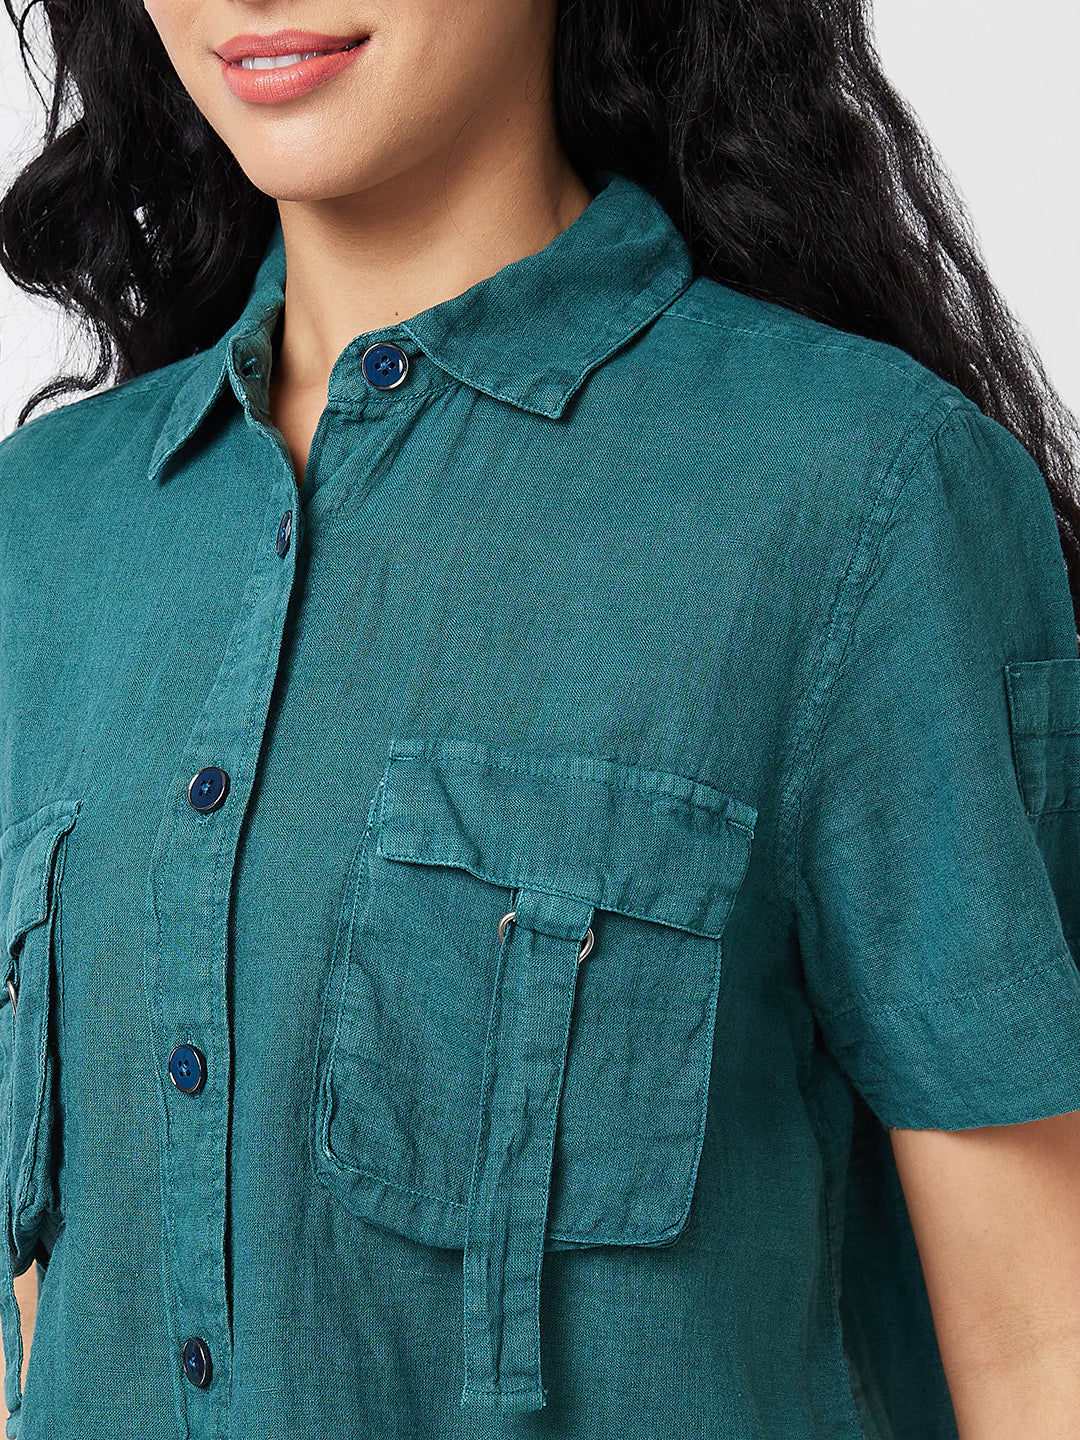 Spykar Blue Solid Shirt For Women